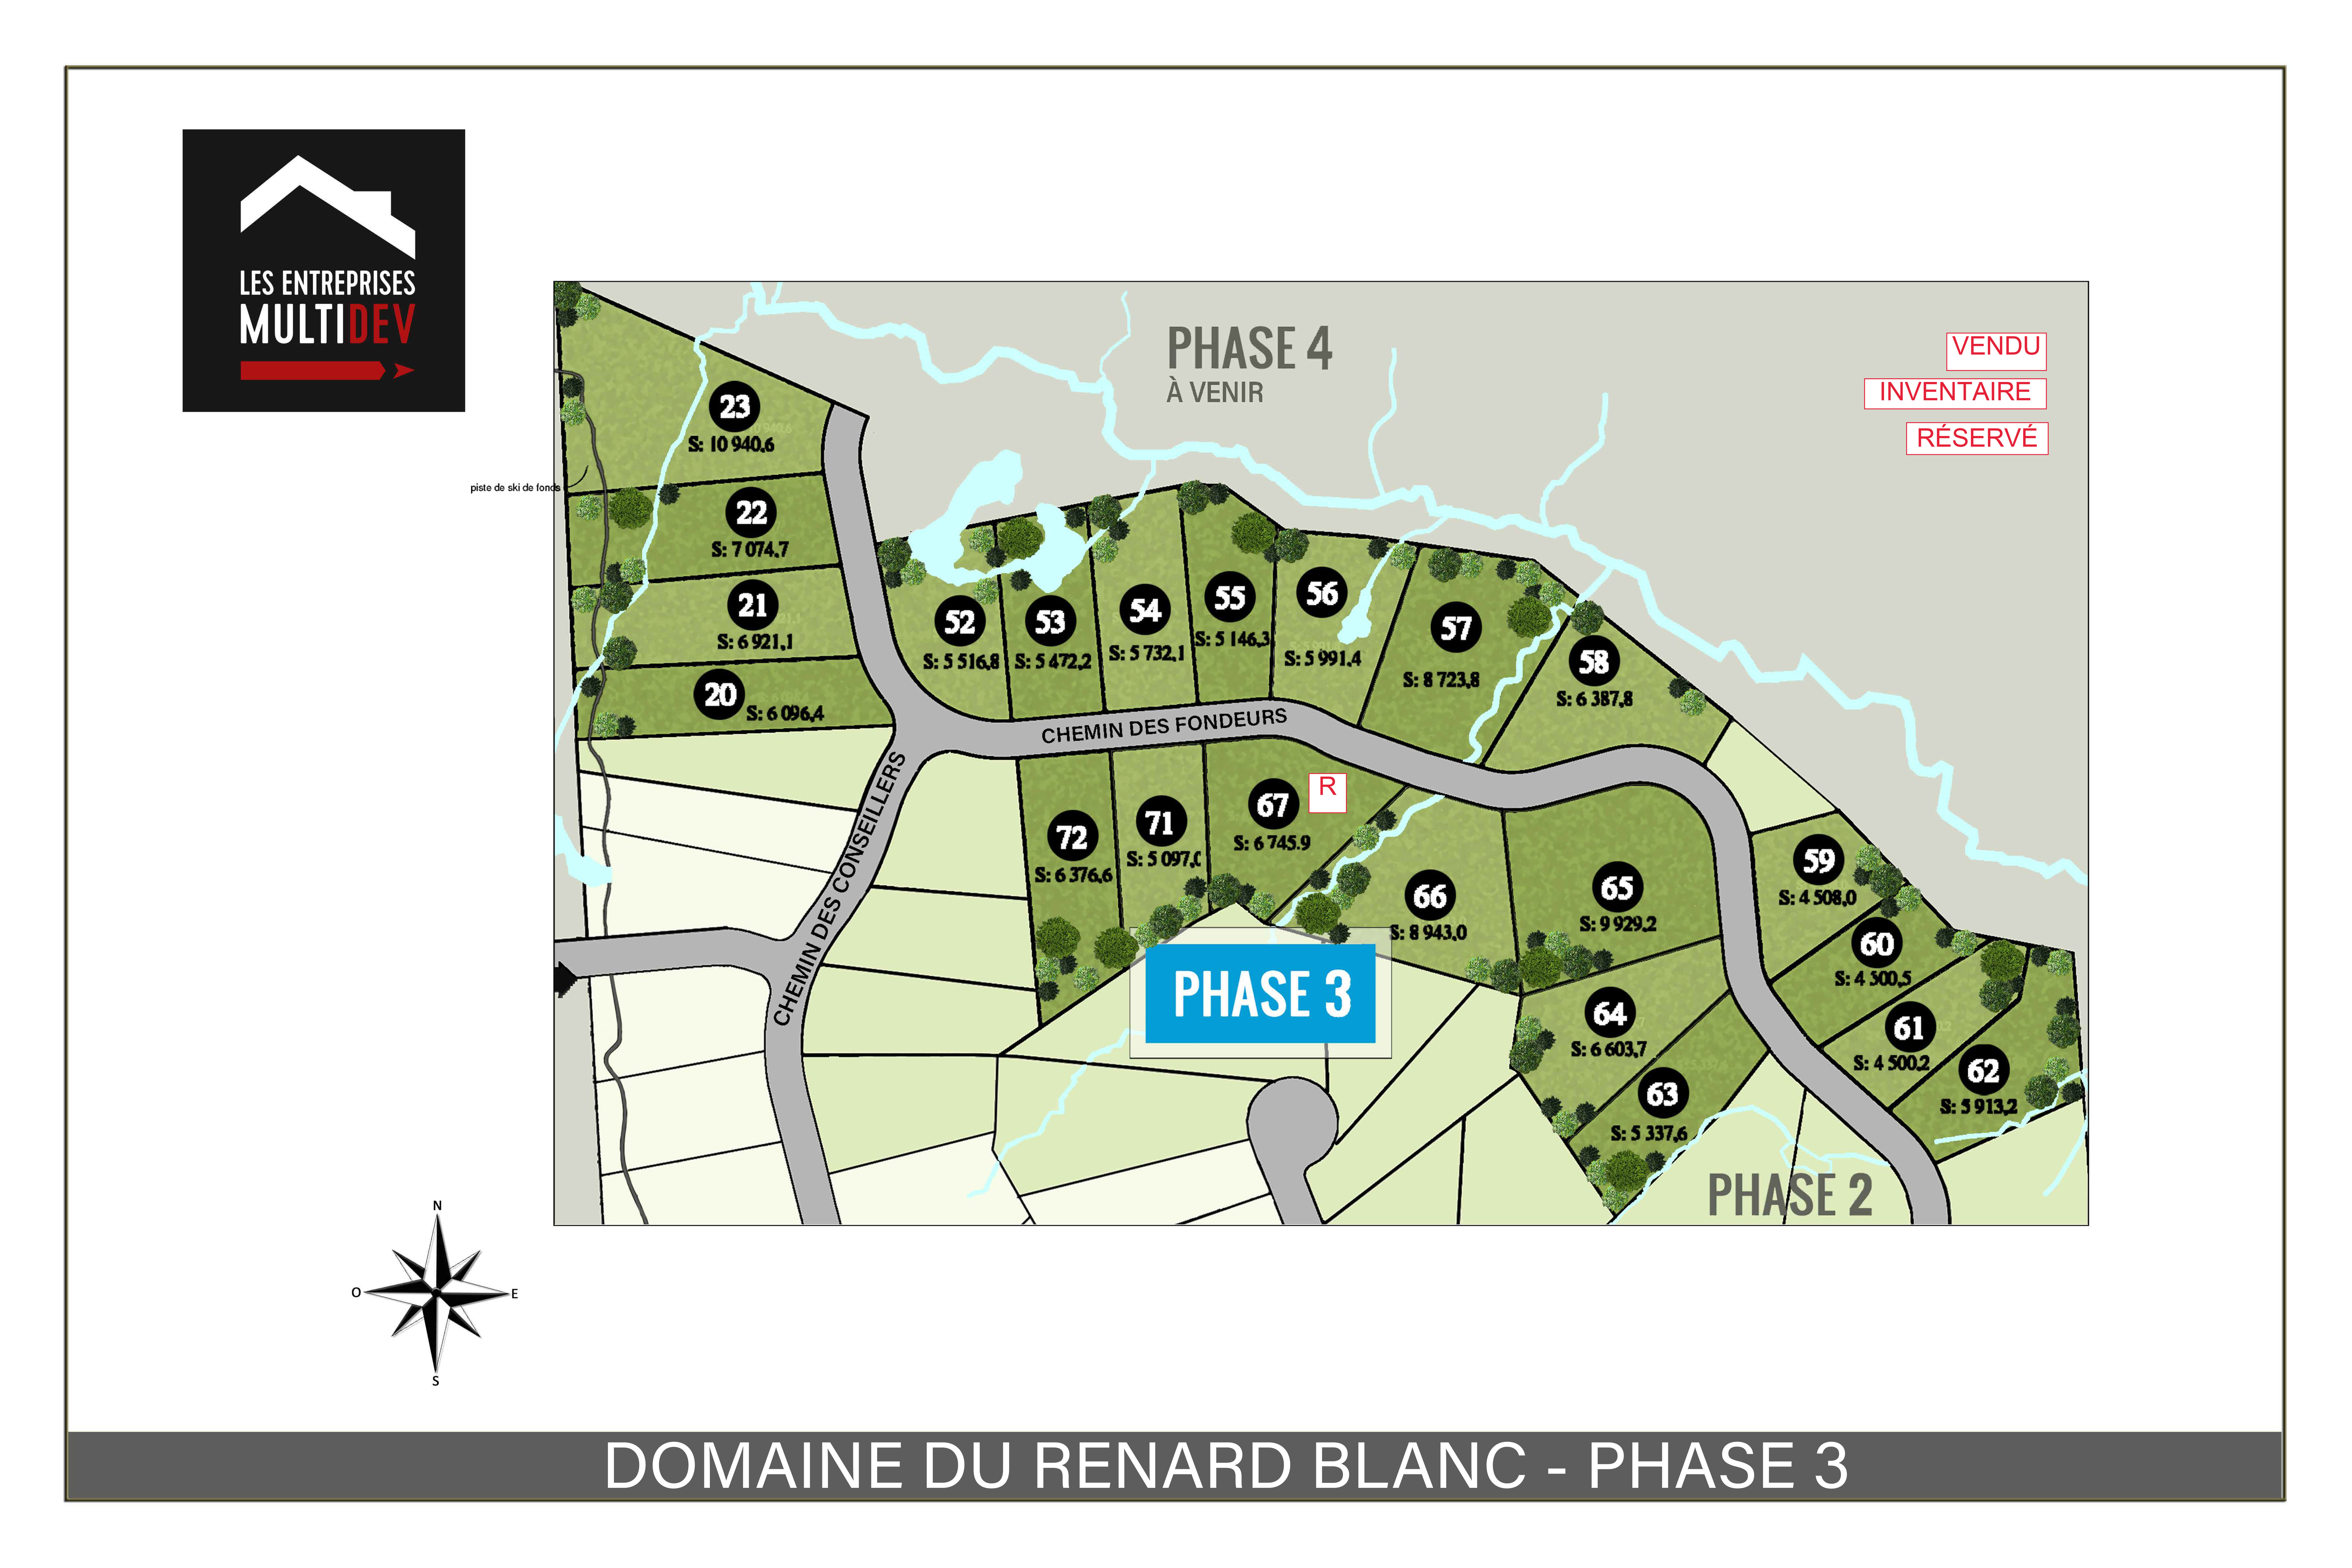 Plan Renard Blanc Phase 3 - Map